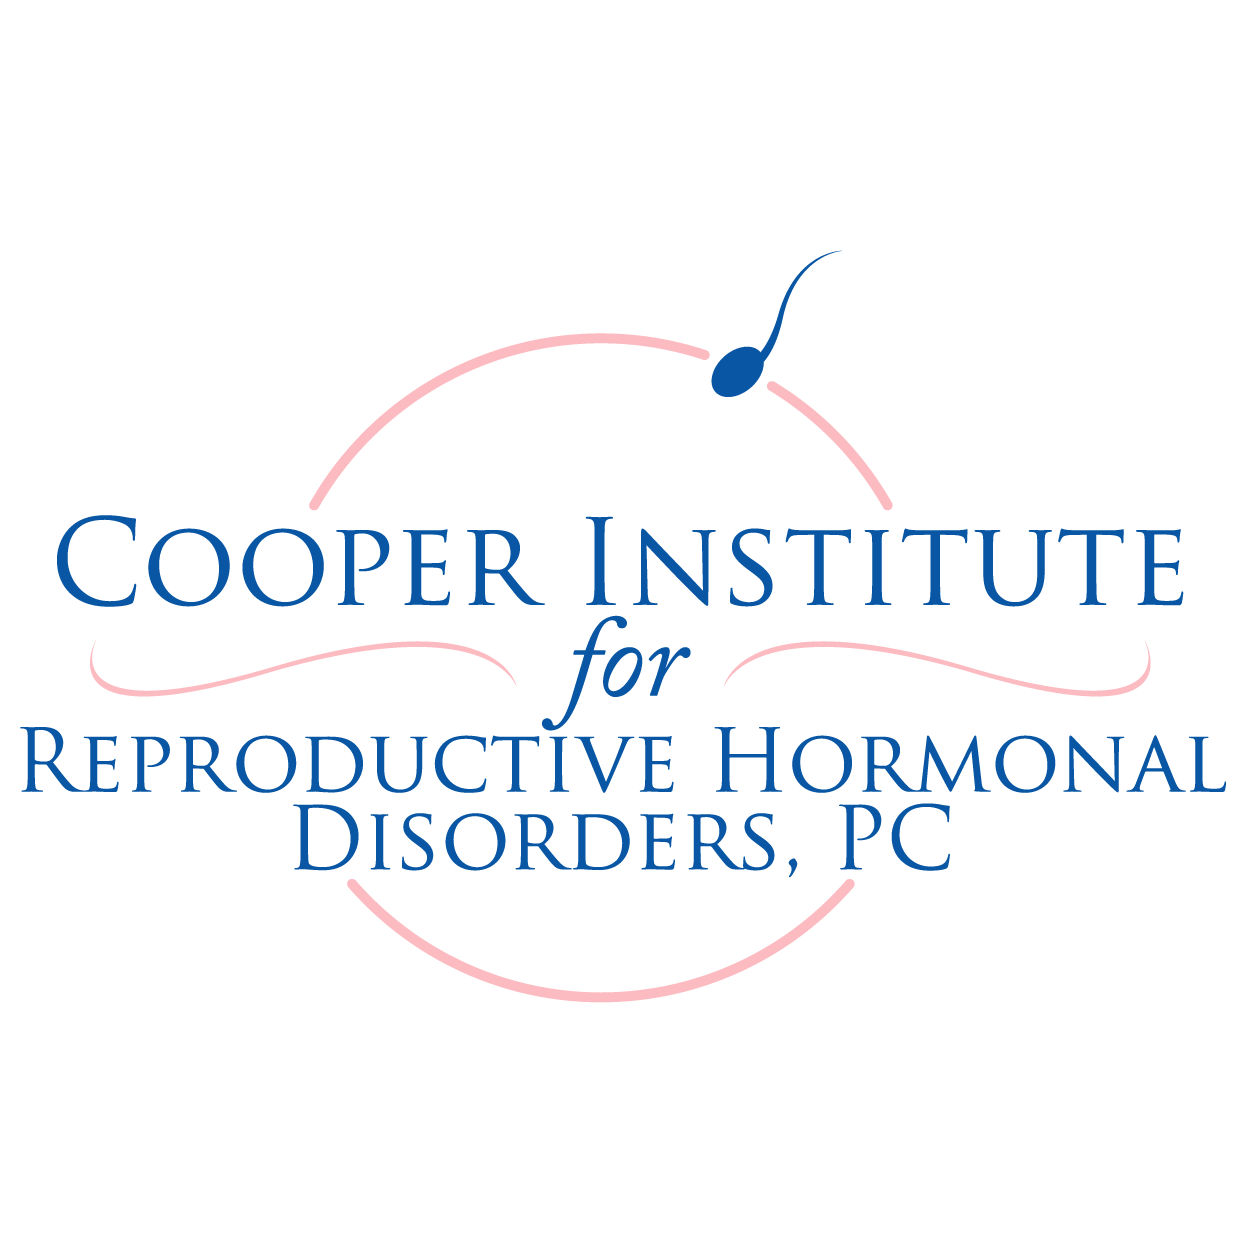 The Cooper Institute Photo